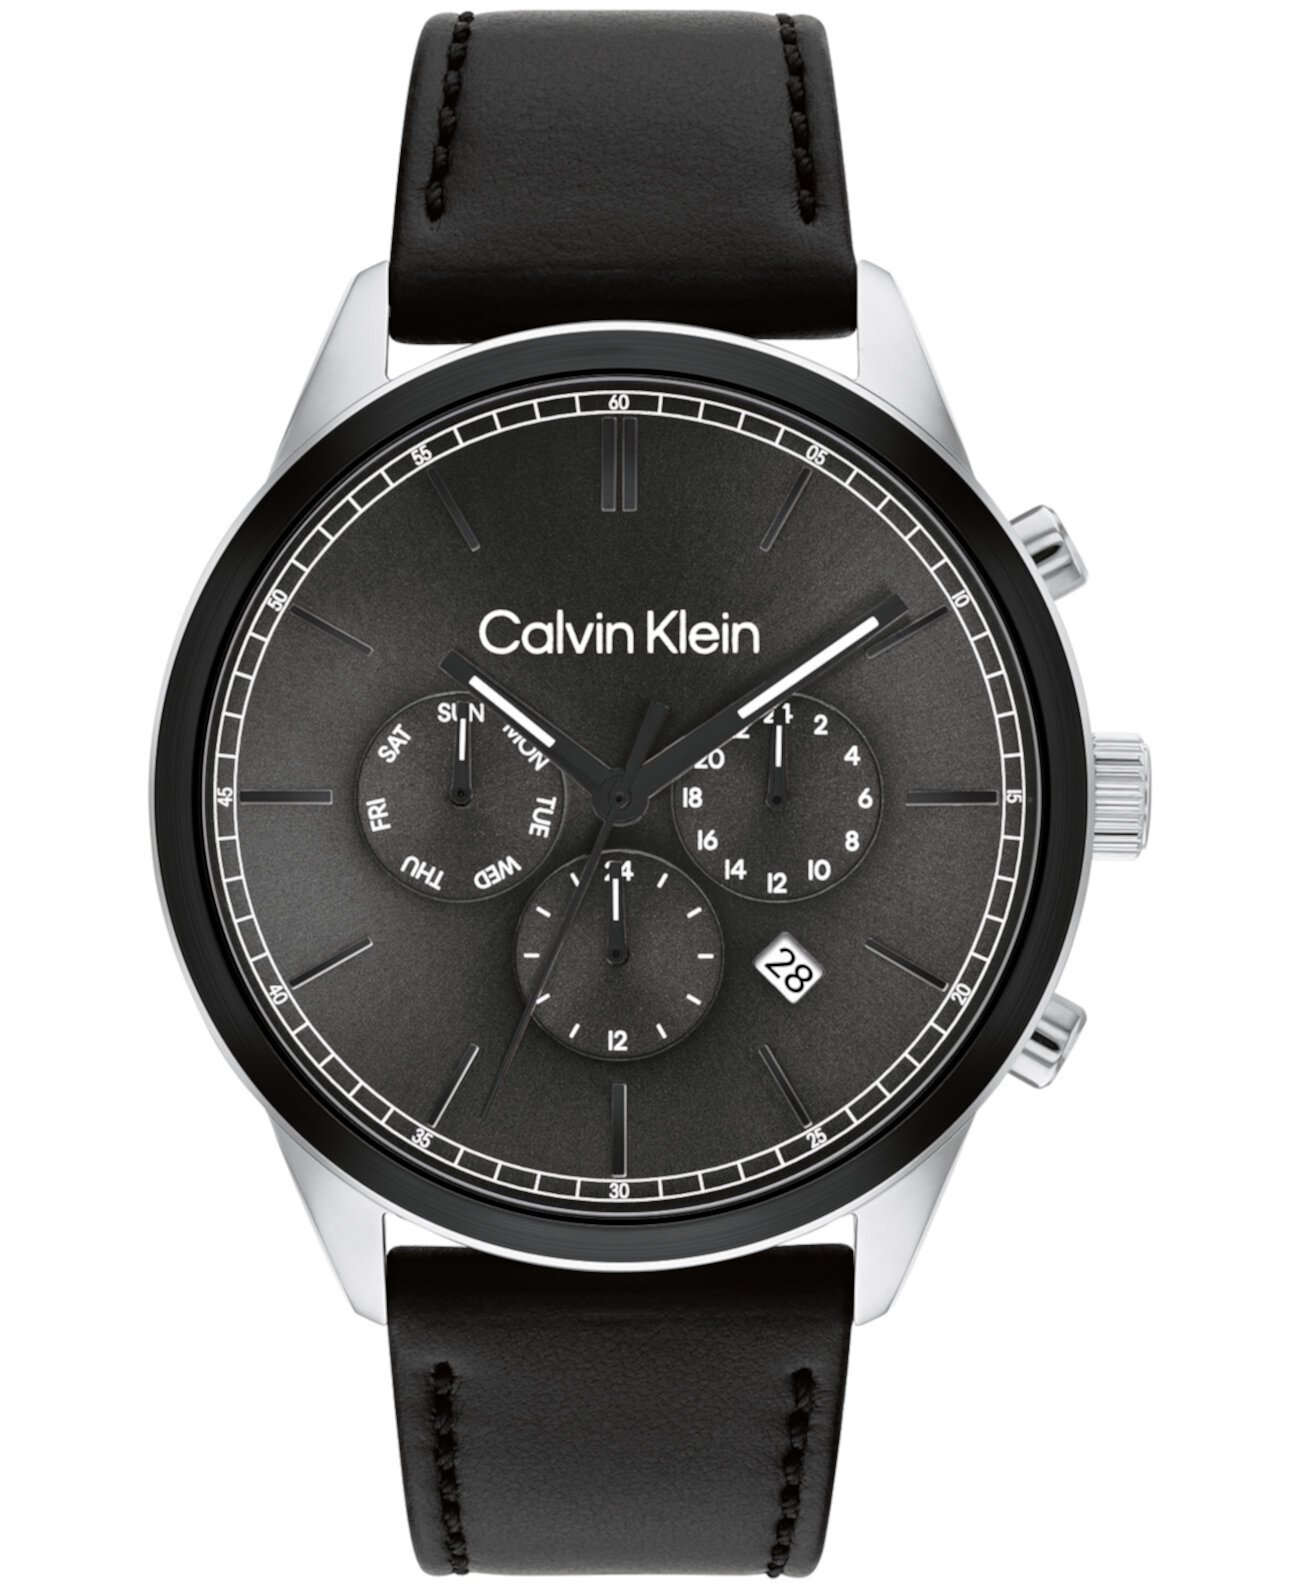 Мужские многофункциональные часы с черным кожаным ремешком, 44 мм Calvin Klein